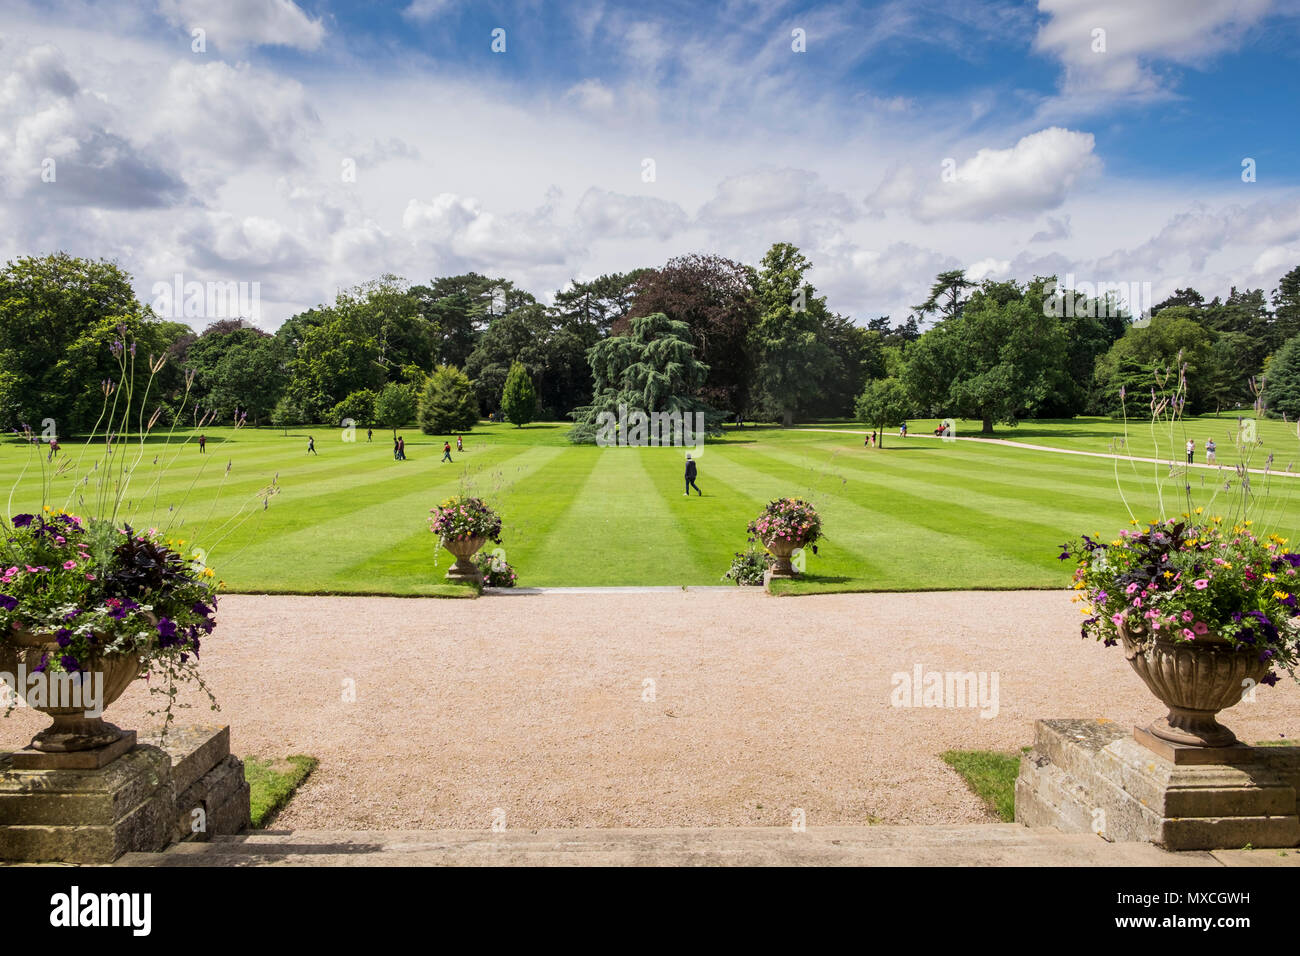 West Rasen vor Sandringham House auf der Royal Estate, Norfolk, England, Großbritannien Stockfoto